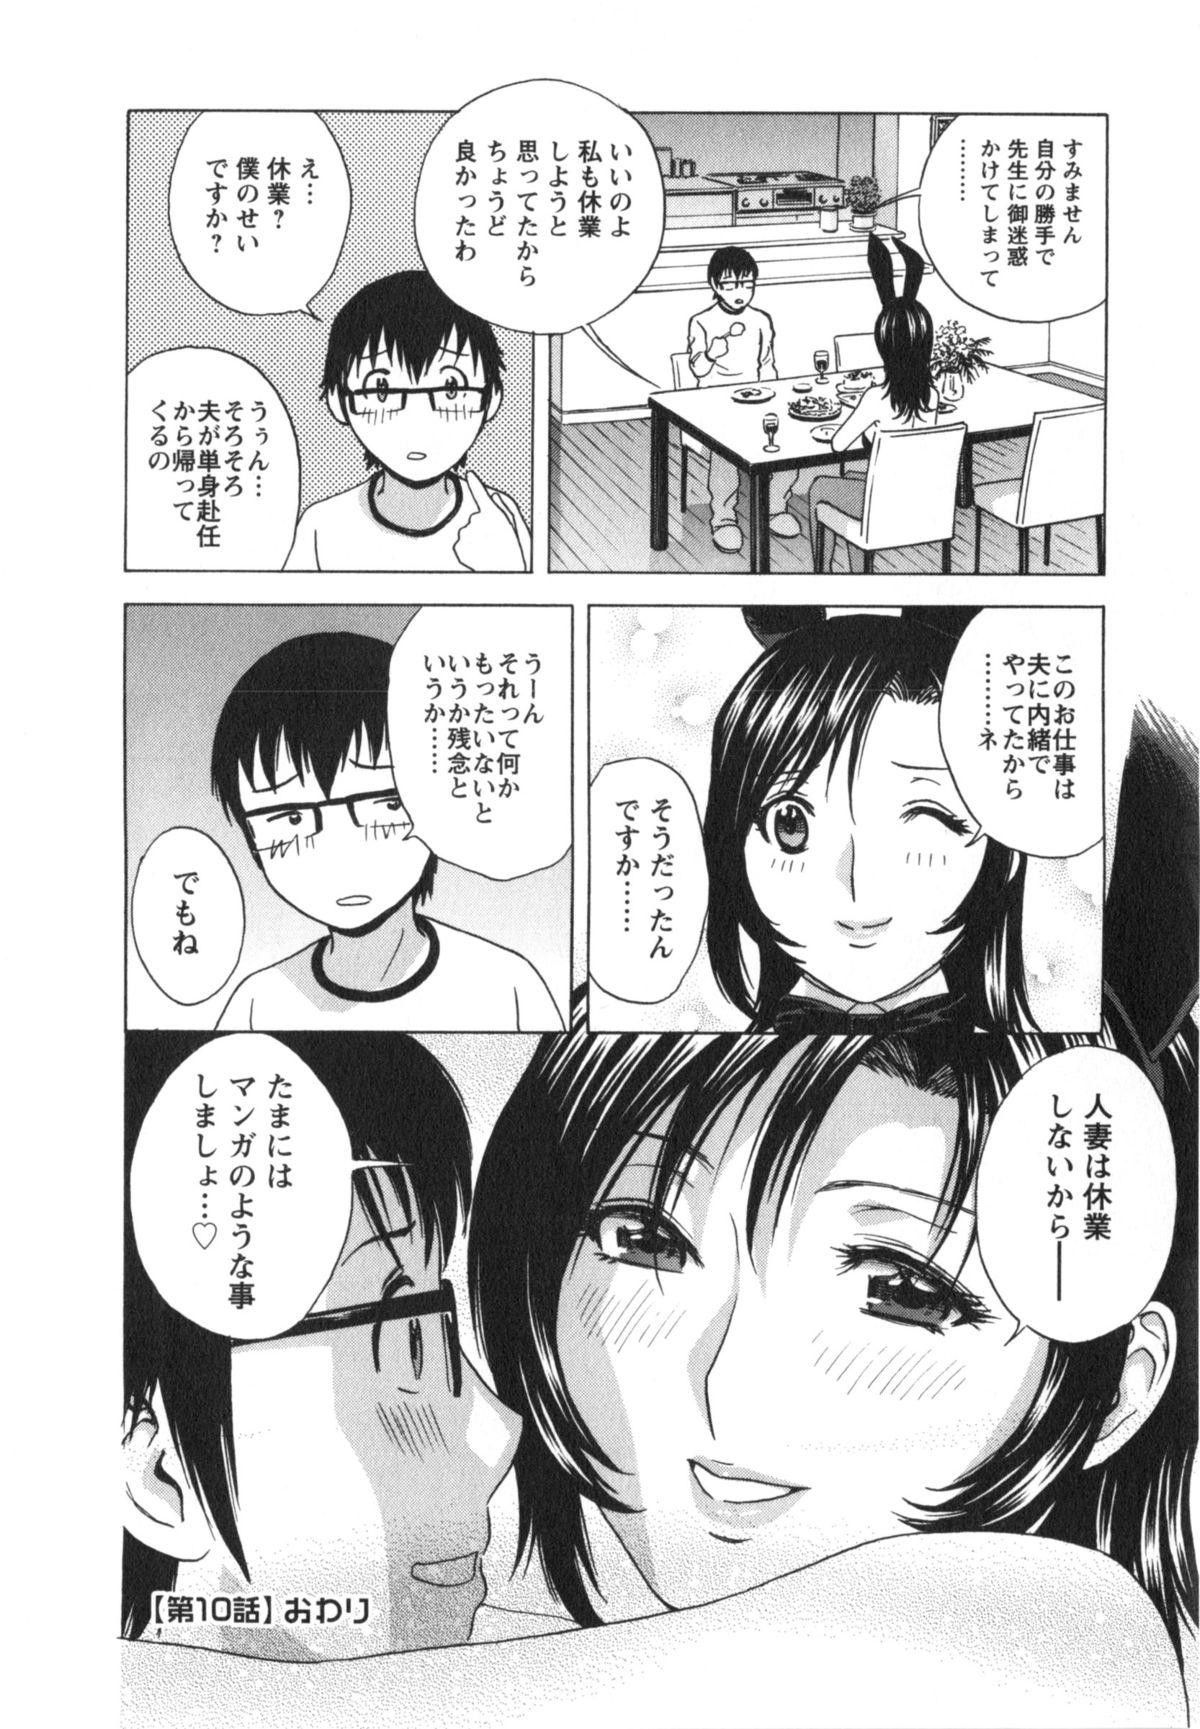 Manga no youna Hitozuma to no Hibi - Days with Married Women such as Comics. 188